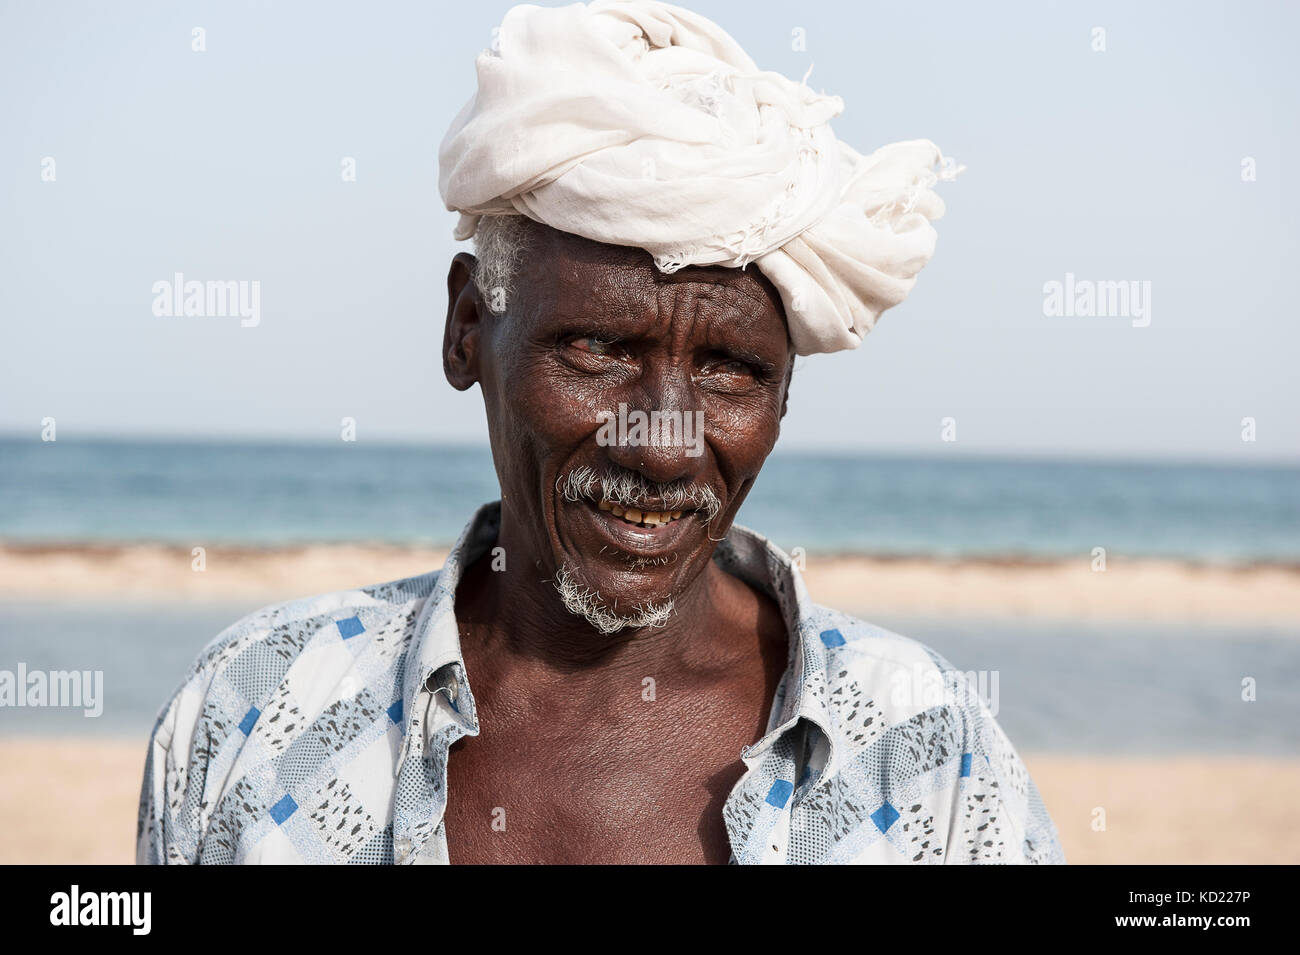 La Tribu Afars sur l'ILE DISSEI, sur une des plages de l'archipel des iles Dalhak en mer rouge habitée par la tribu des Affars, peuple de la corne d'A Stock Photo